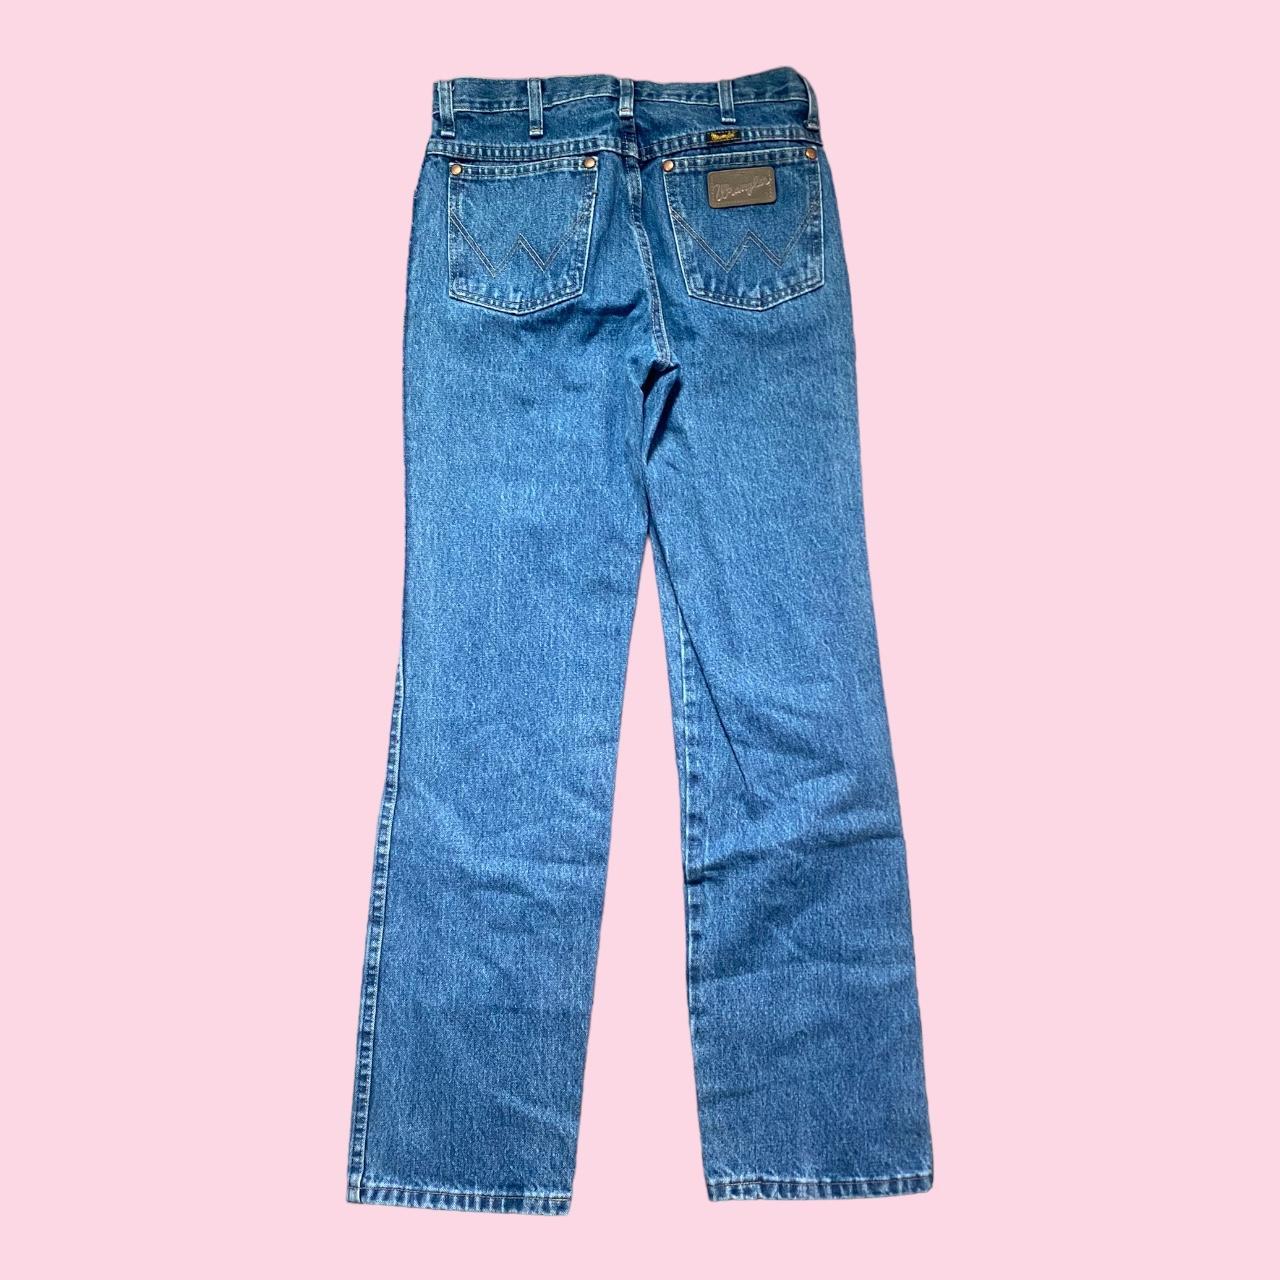 Vintage wrangler jeans with - Gem